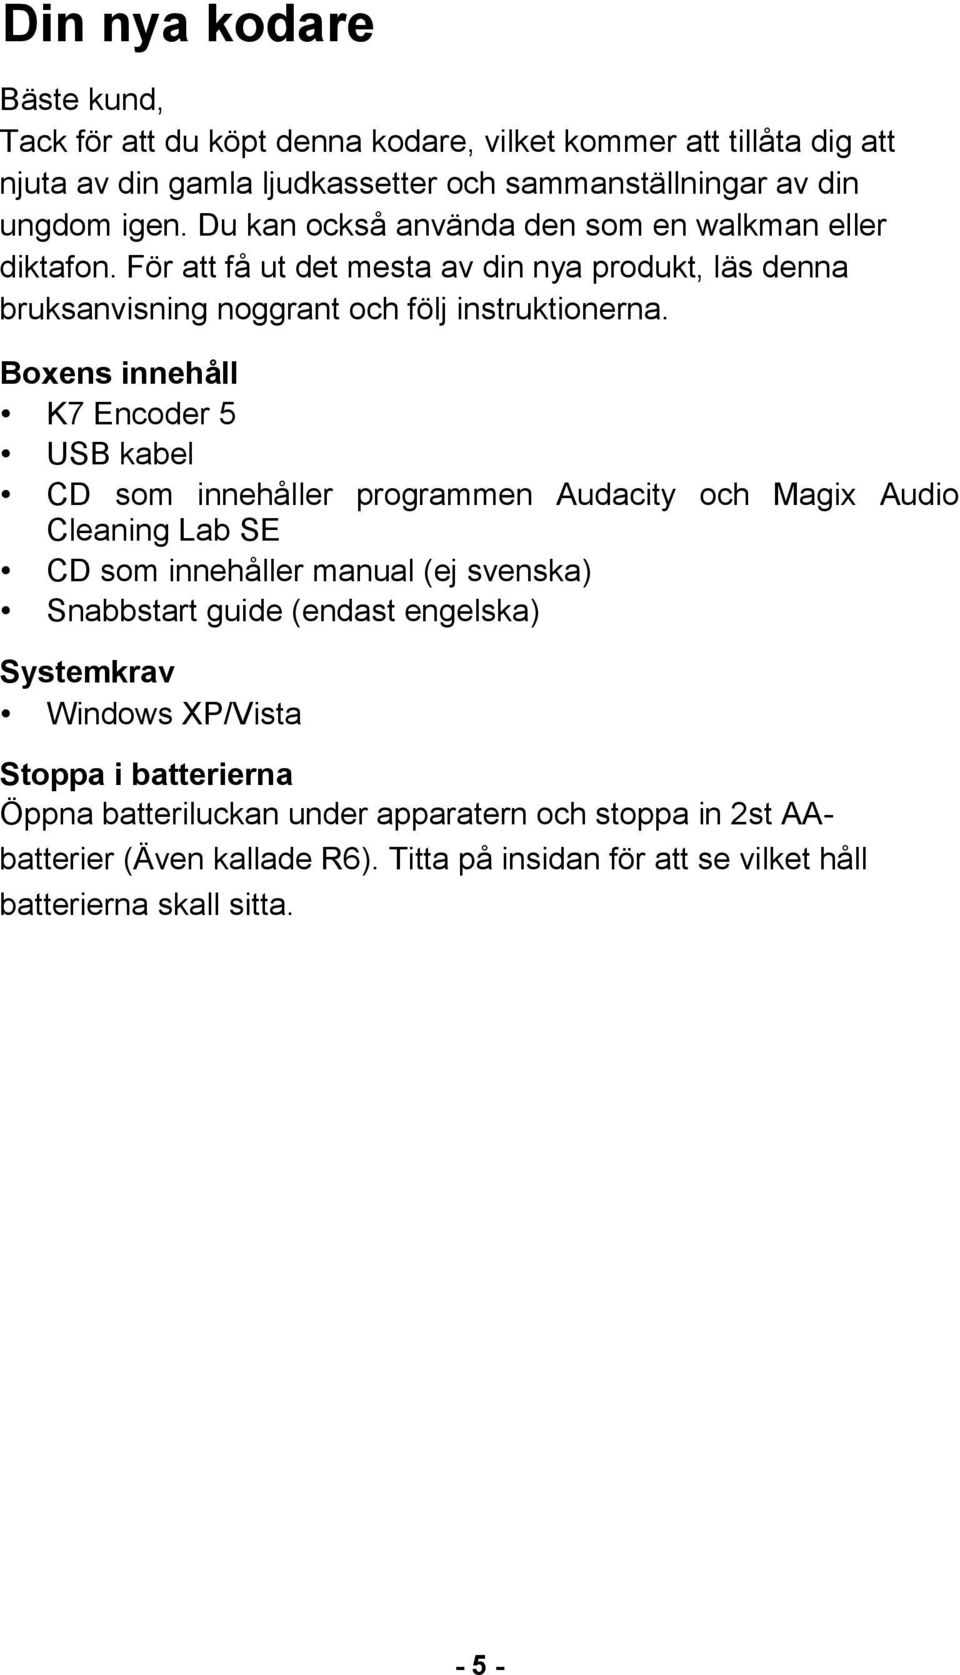 Boxens innehåll K7 Encoder 5 USB kabel CD som innehåller programmen Audacity och Magix Audio Cleaning Lab SE CD som innehåller manual (ej svenska) Snabbstart guide (endast